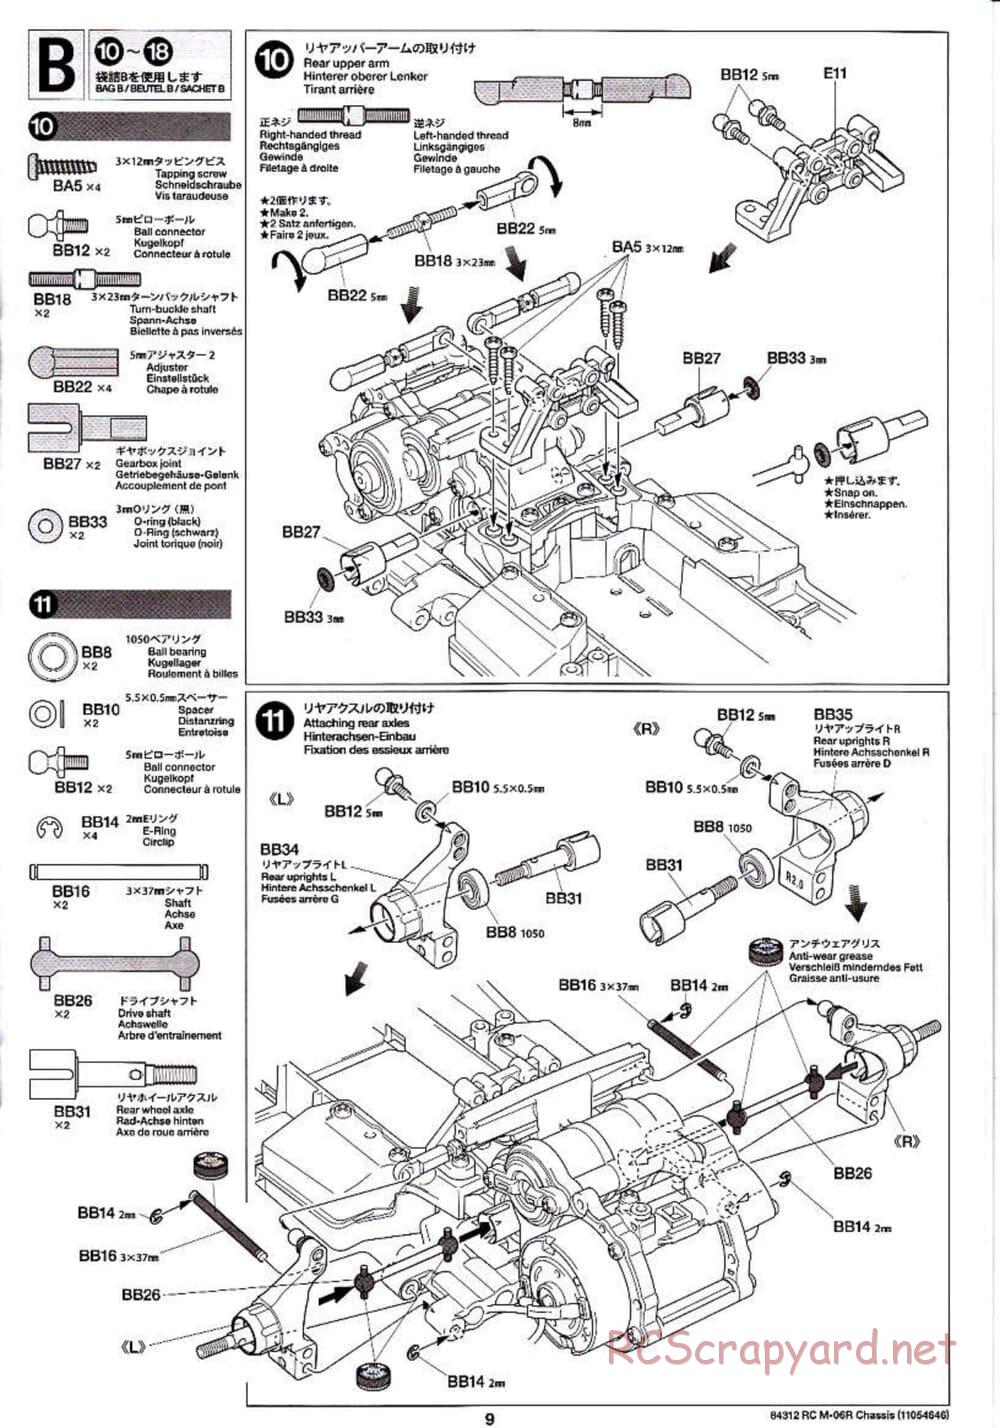 Tamiya - M-06R Chassis - Manual - Page 9